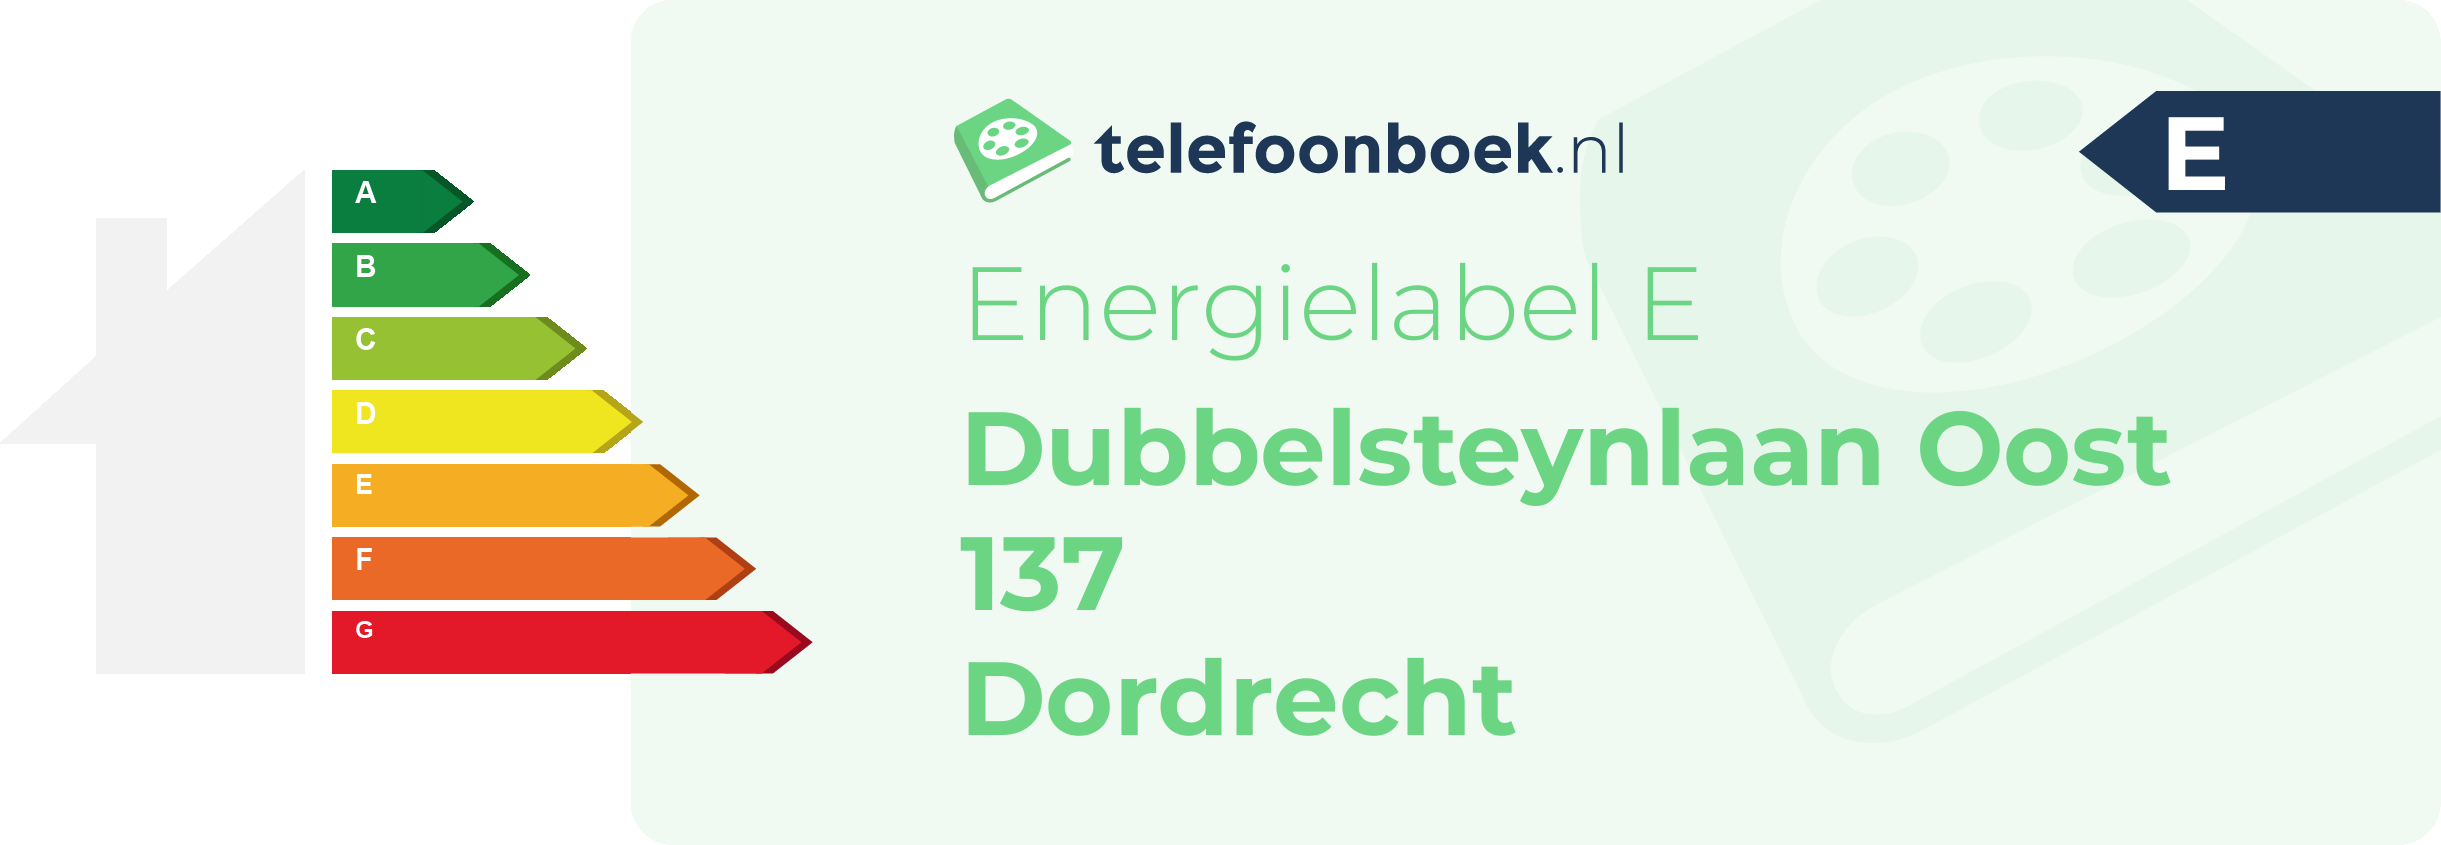 Energielabel Dubbelsteynlaan Oost 137 Dordrecht